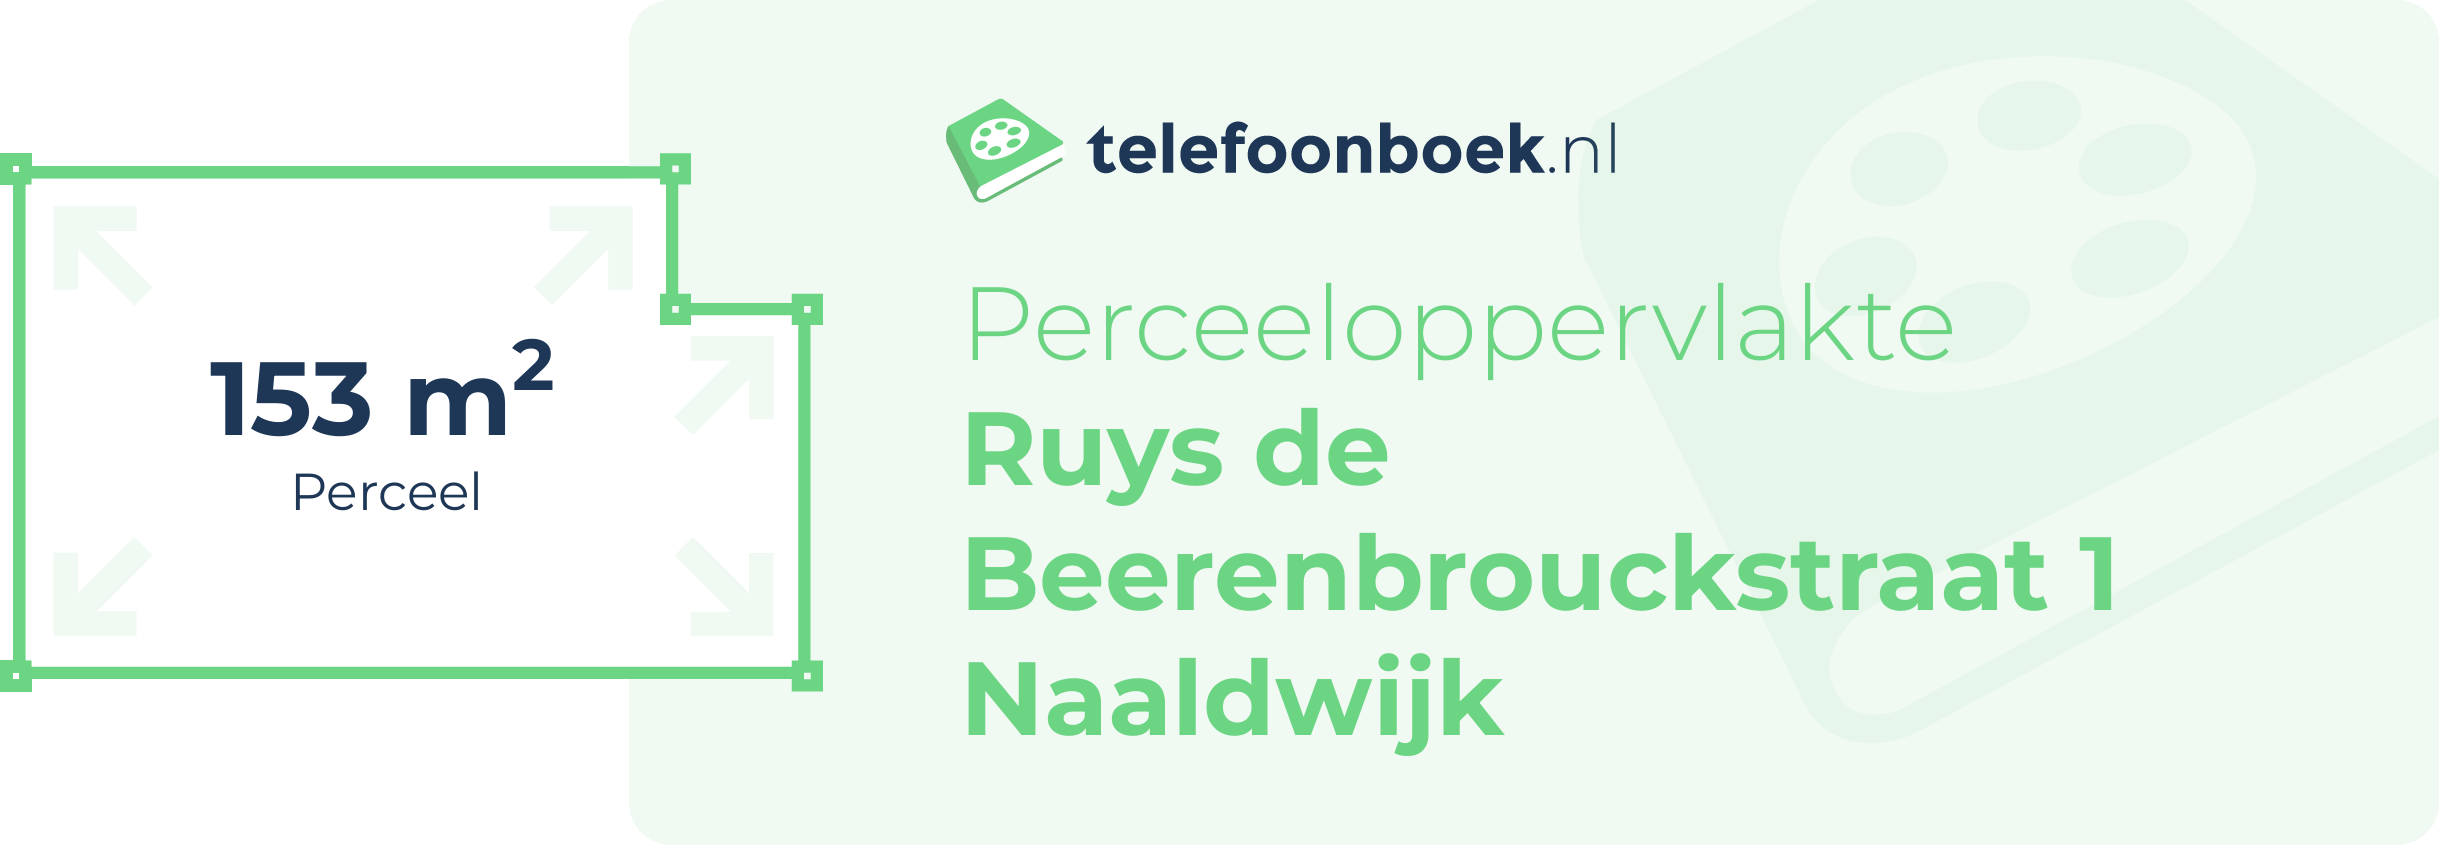 Perceeloppervlakte Ruys De Beerenbrouckstraat 1 Naaldwijk